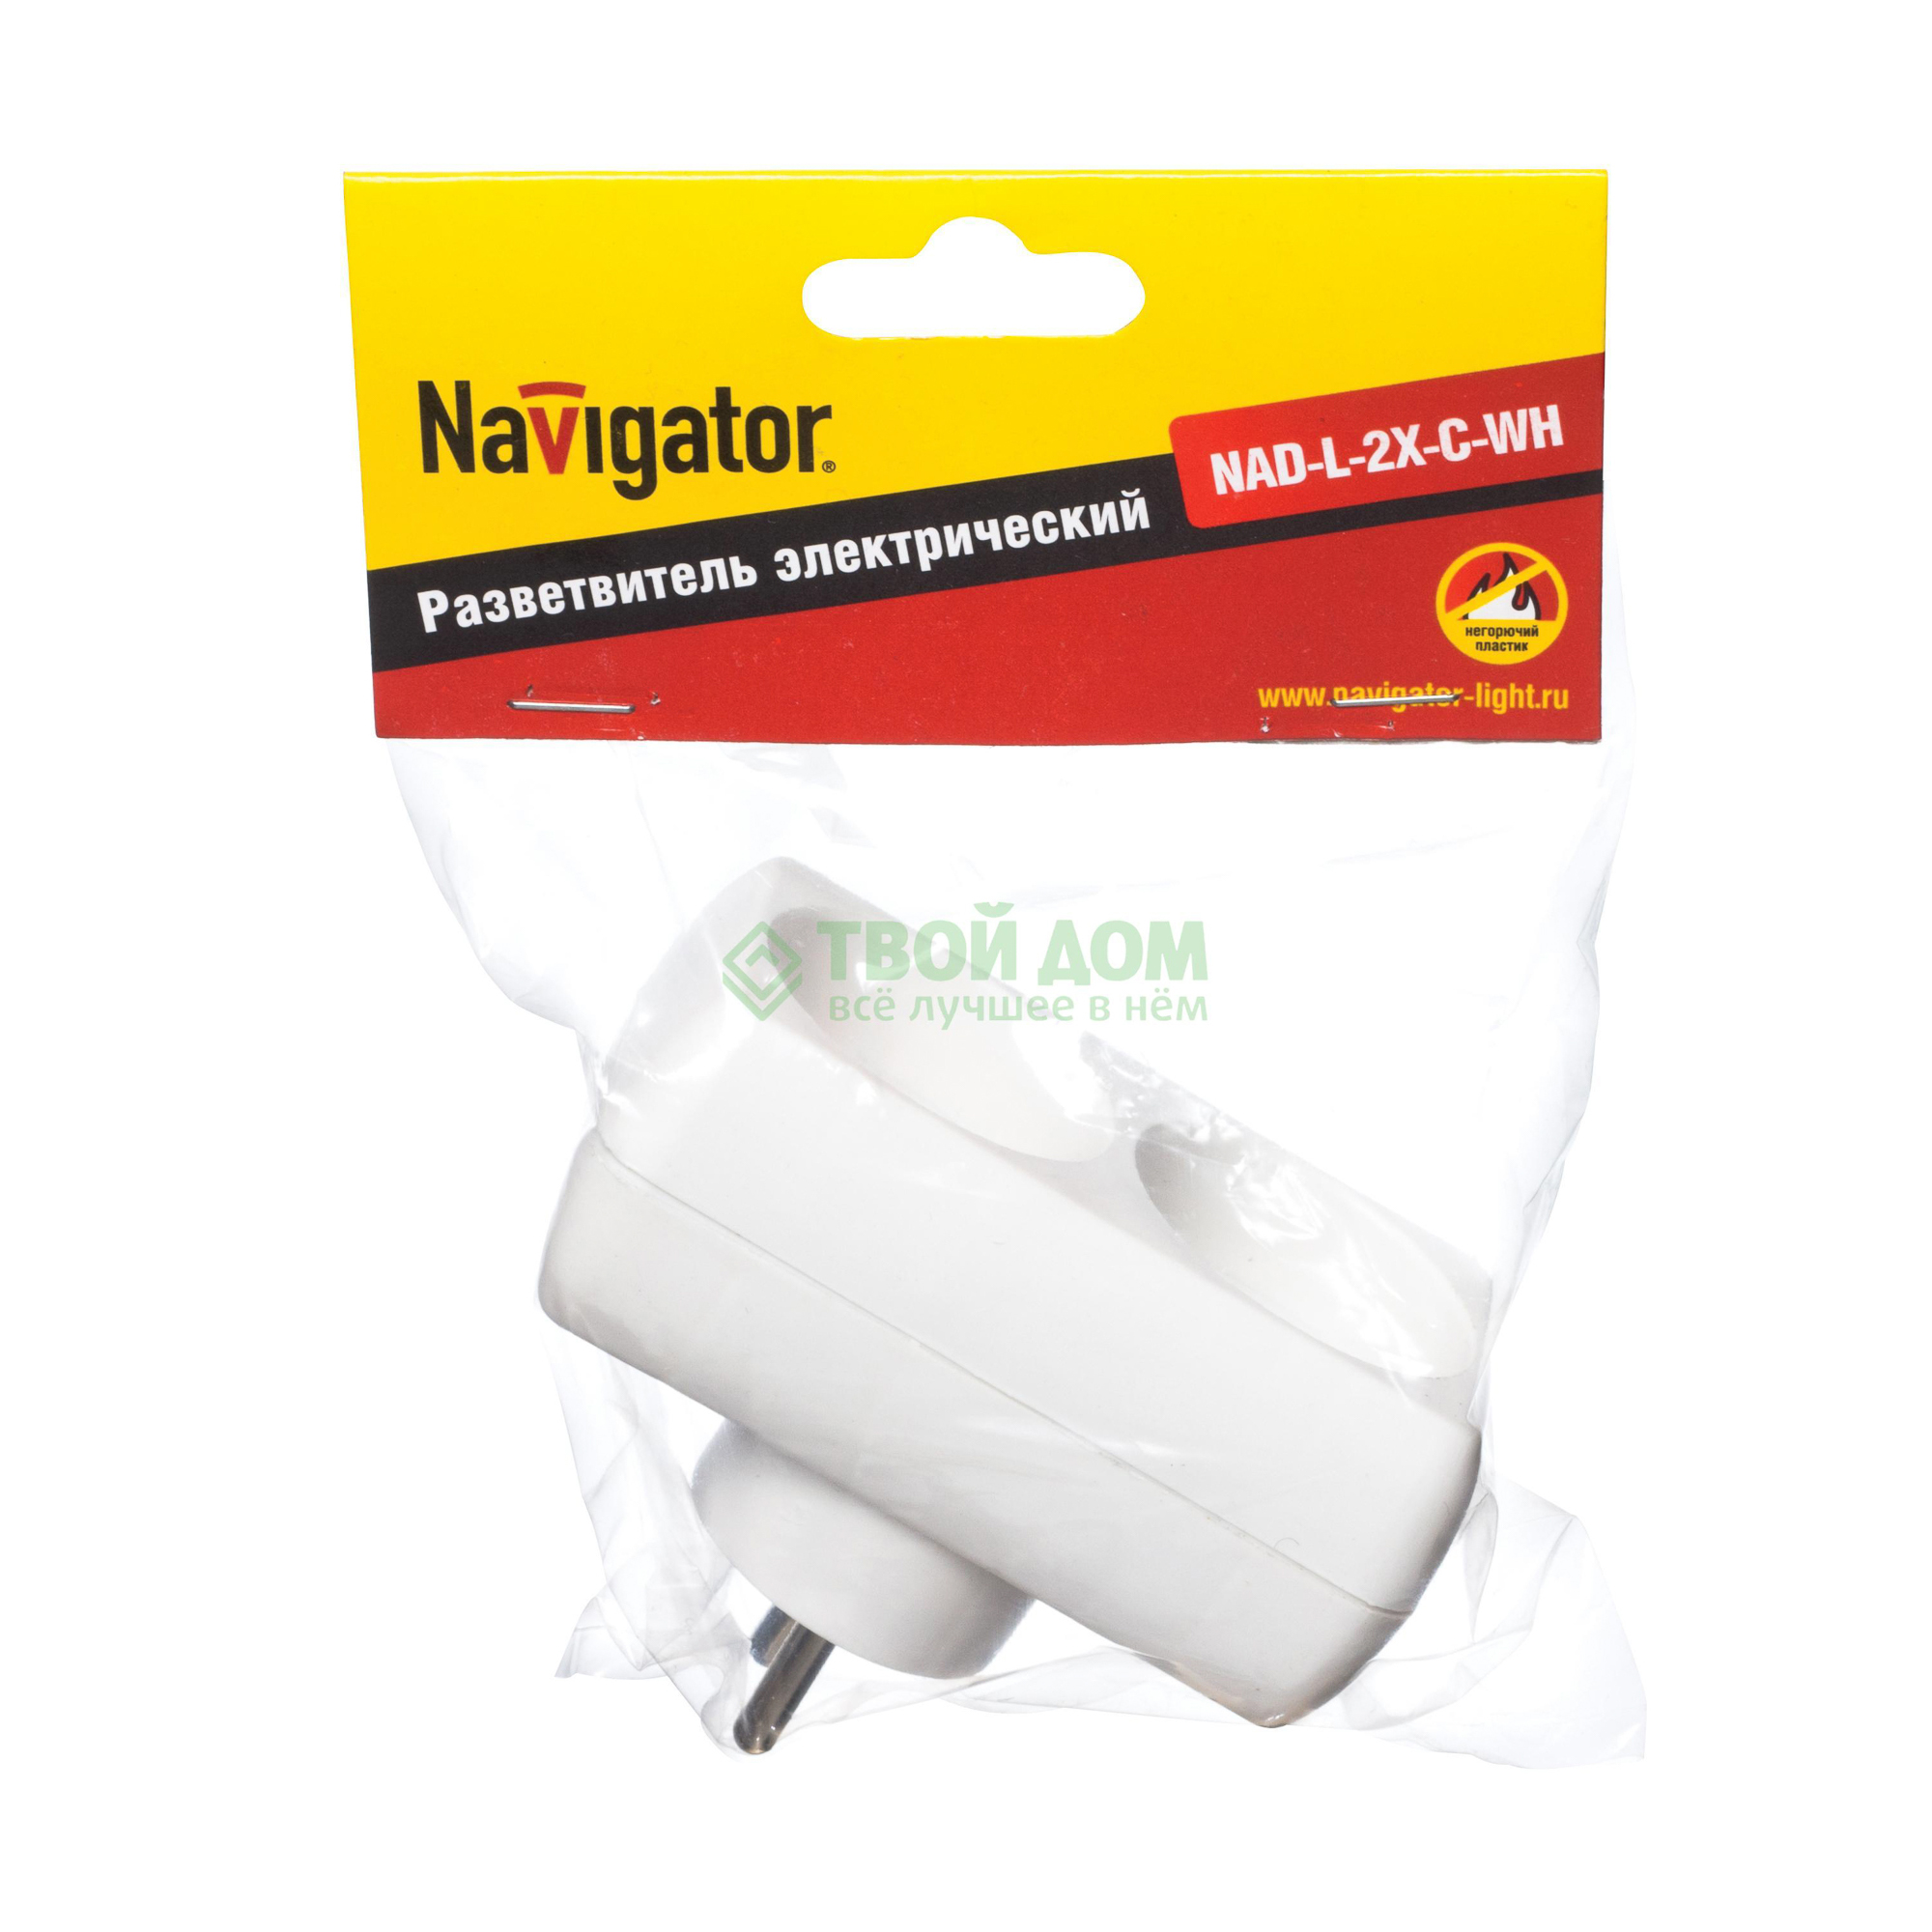 Разветвитель Navigator 94 671 NAD-L-2X-C-WH 2, цвет белый - фото 1